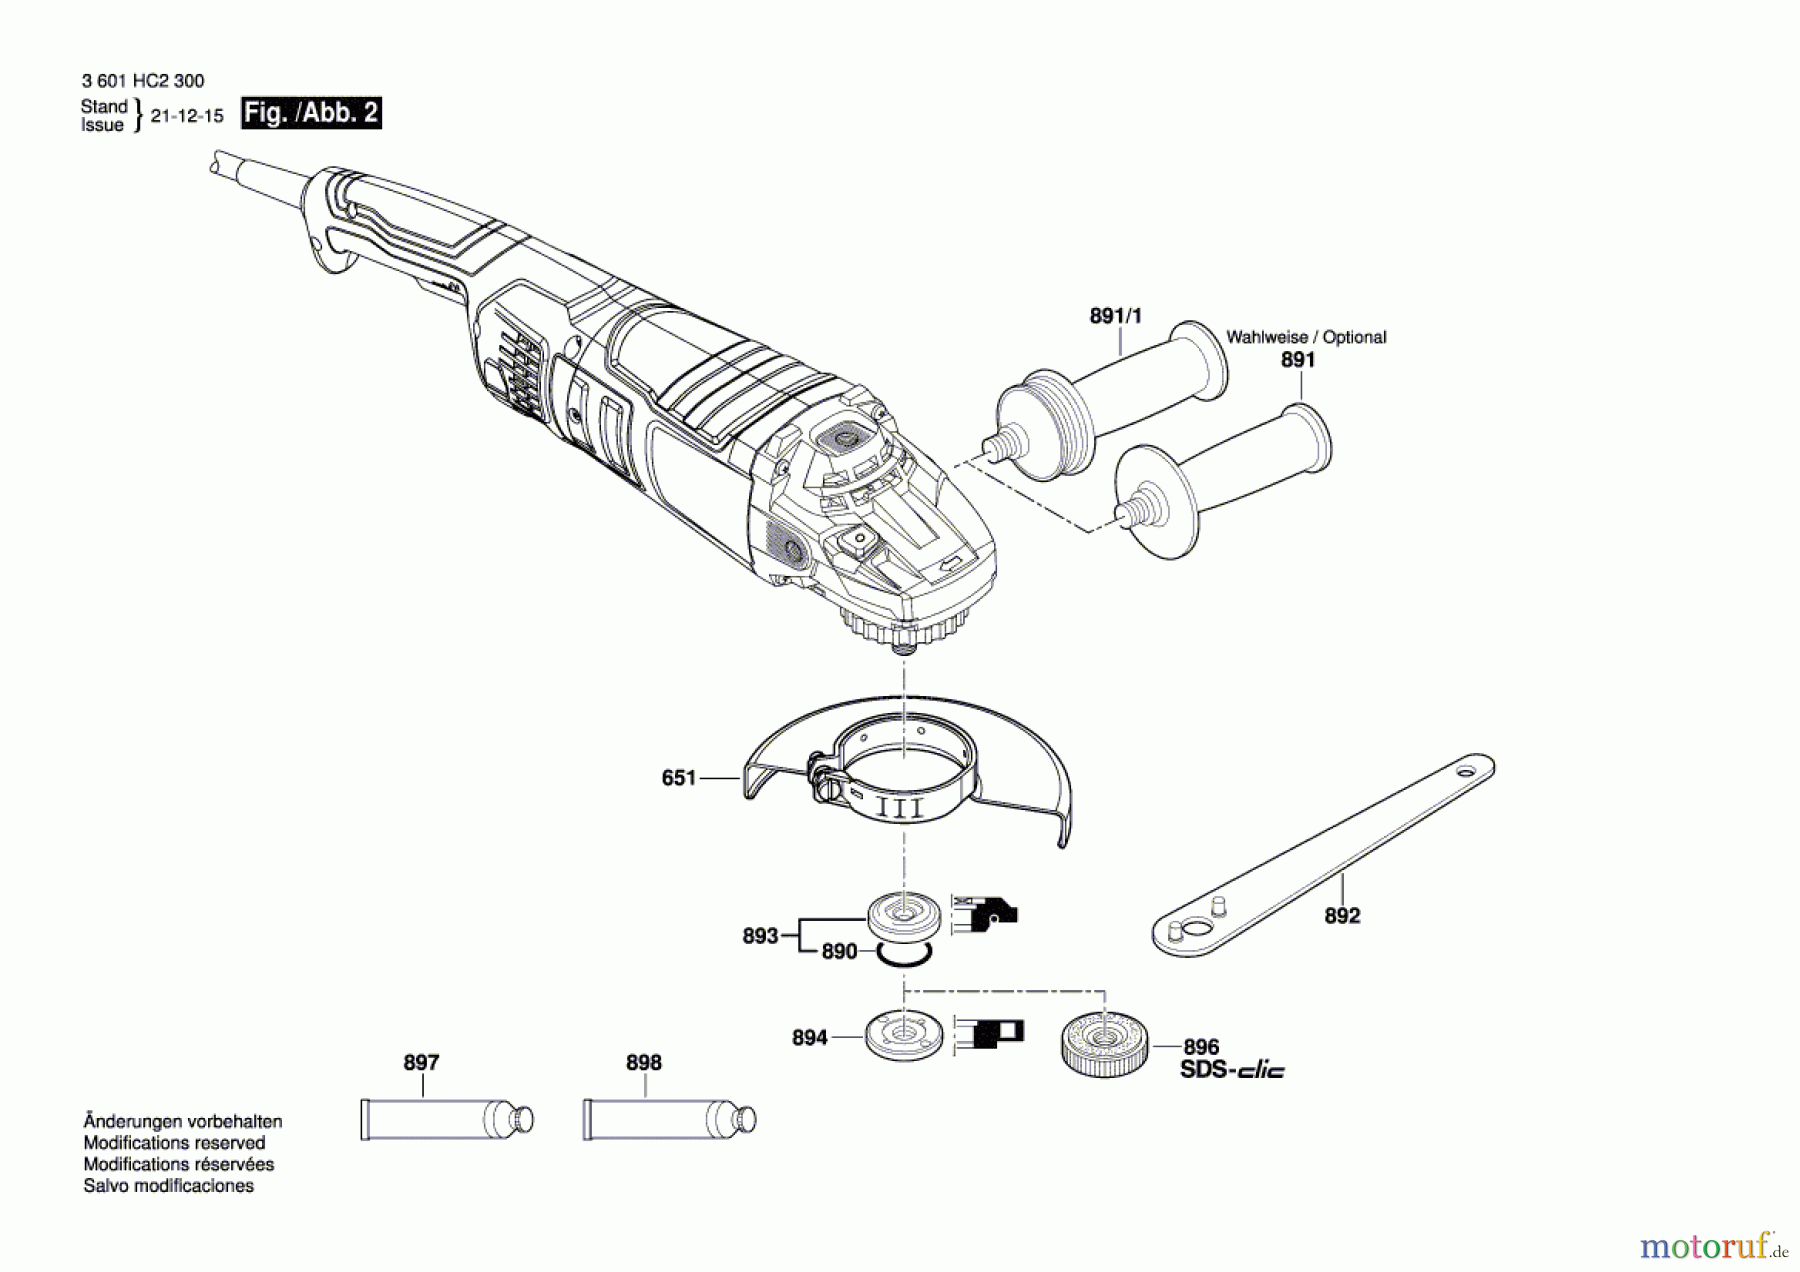  Bosch Werkzeug Winkelschleifer GWS 24-230 JZ Seite 2